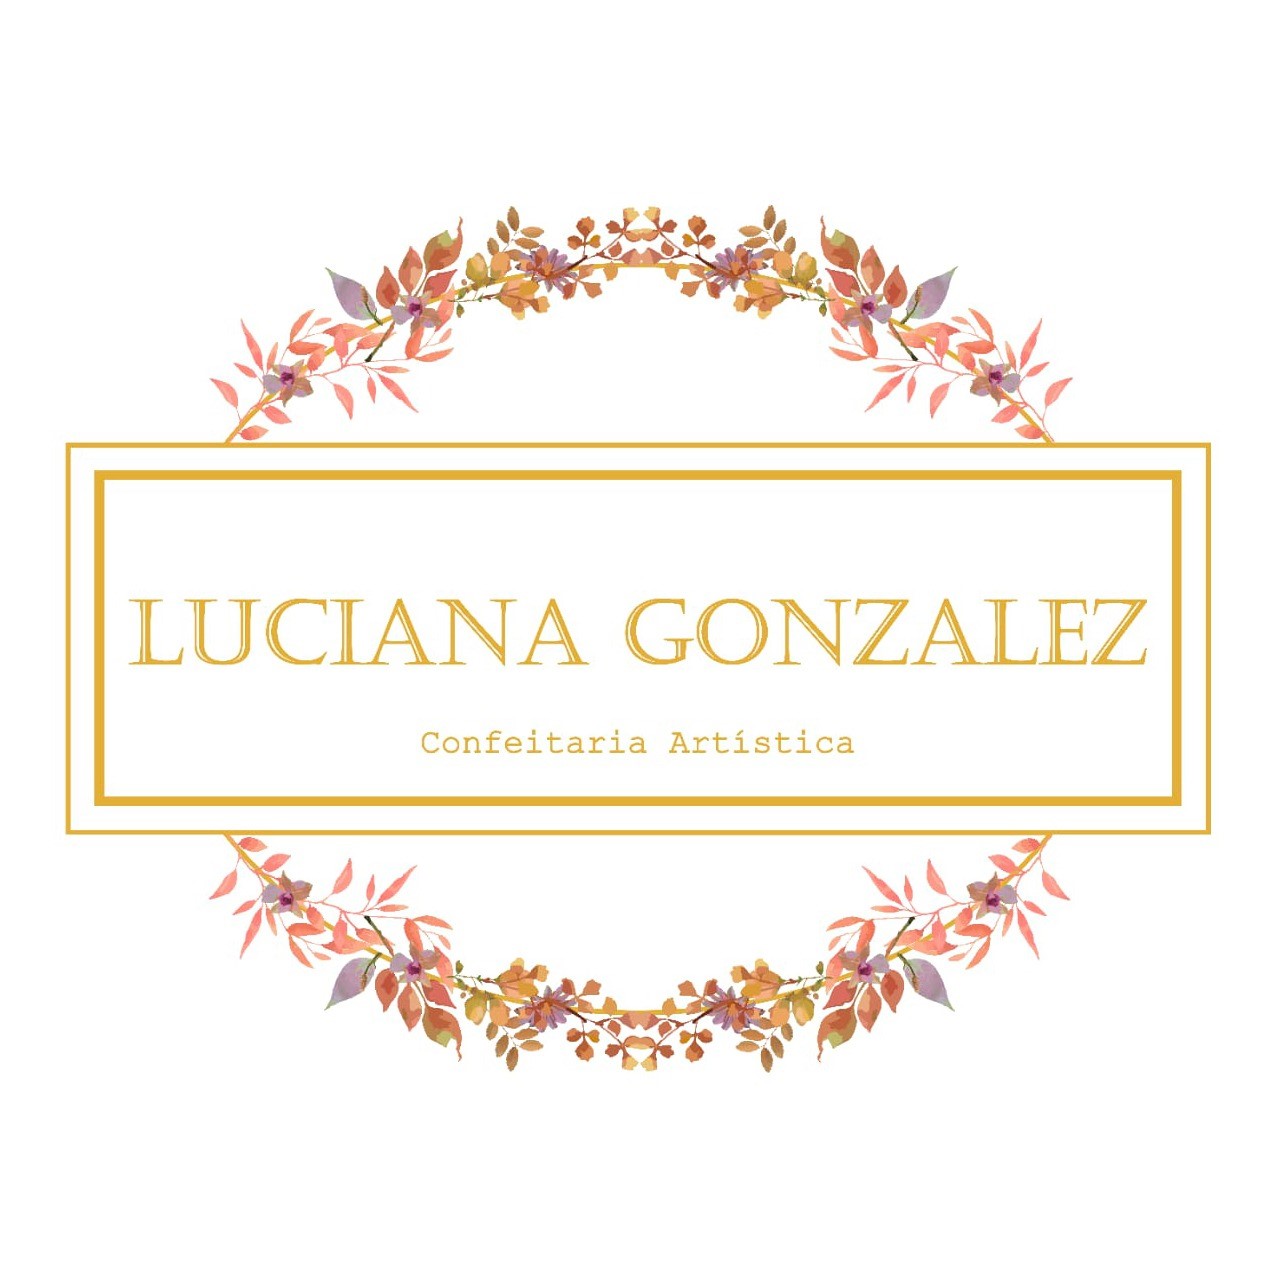 Luciana Gonzalez Confeitaria